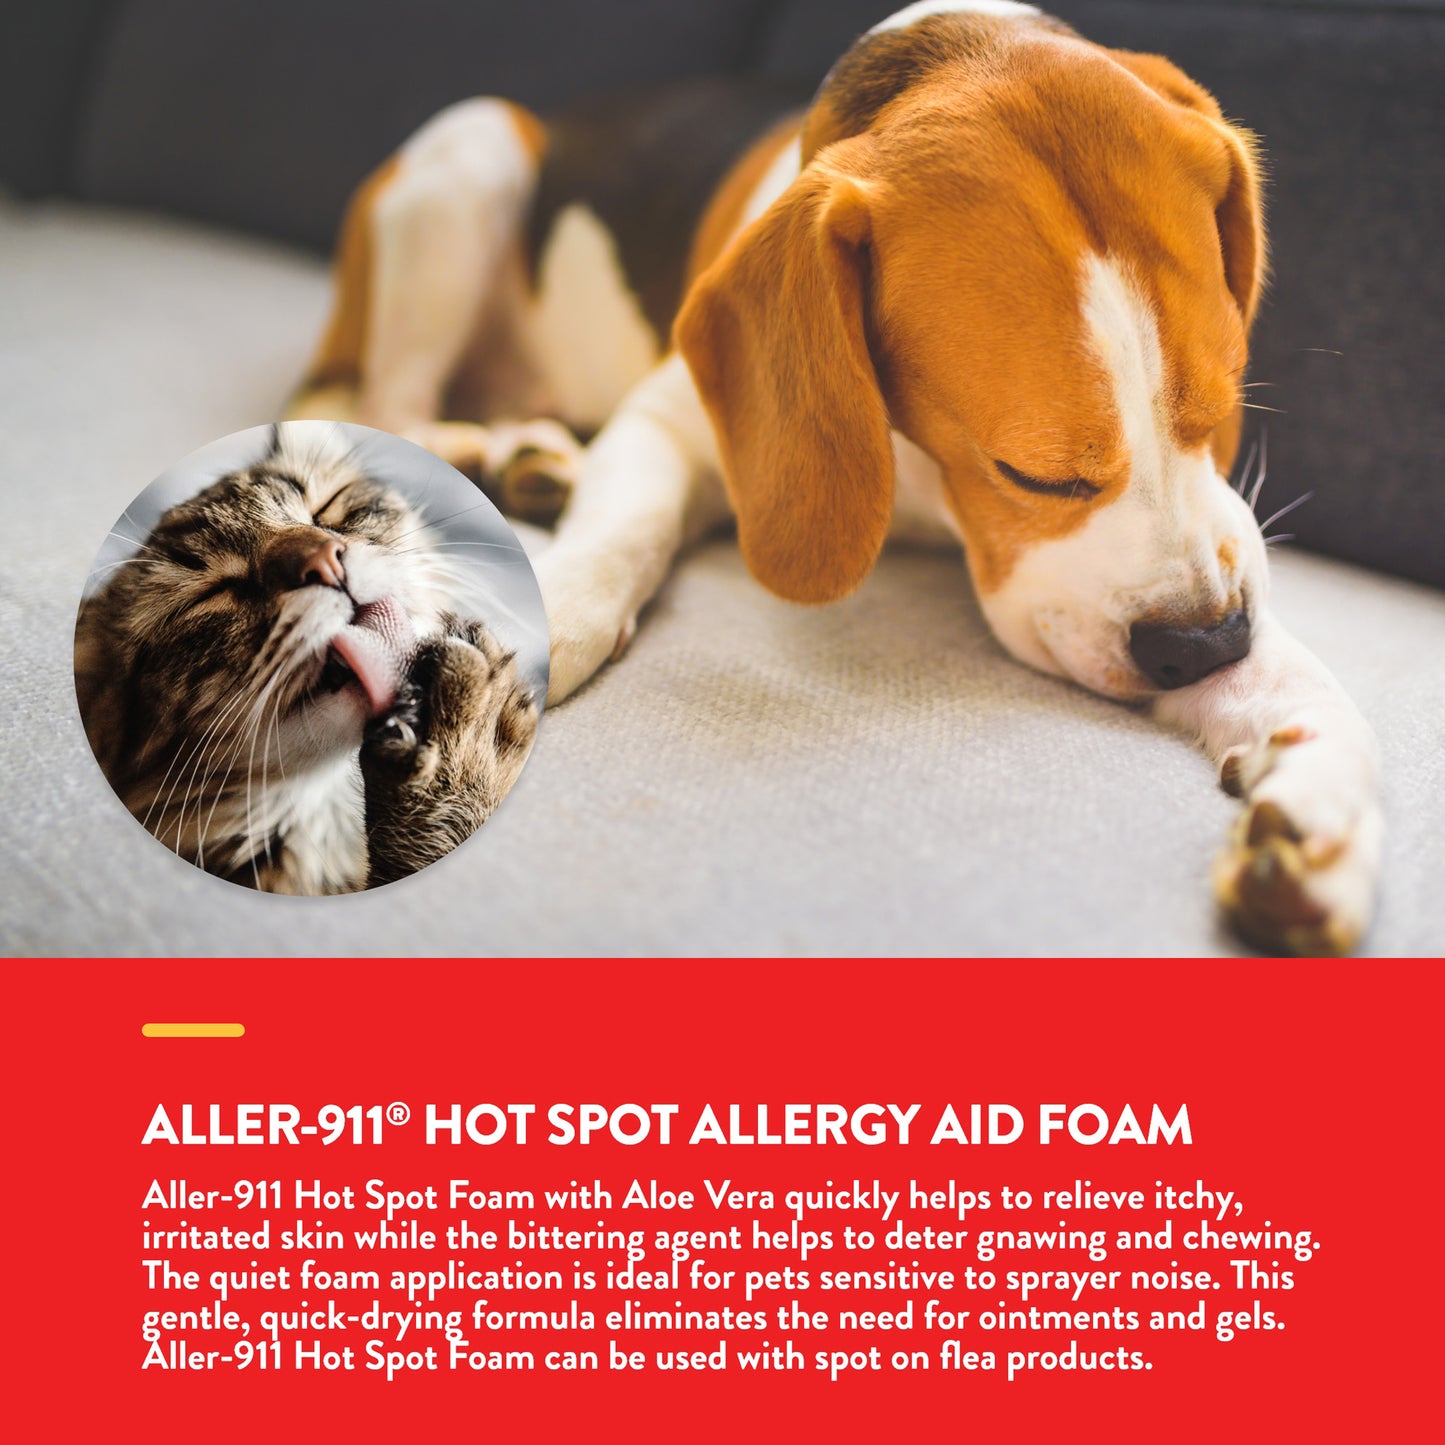 Aller-911® Hot Spot Foam